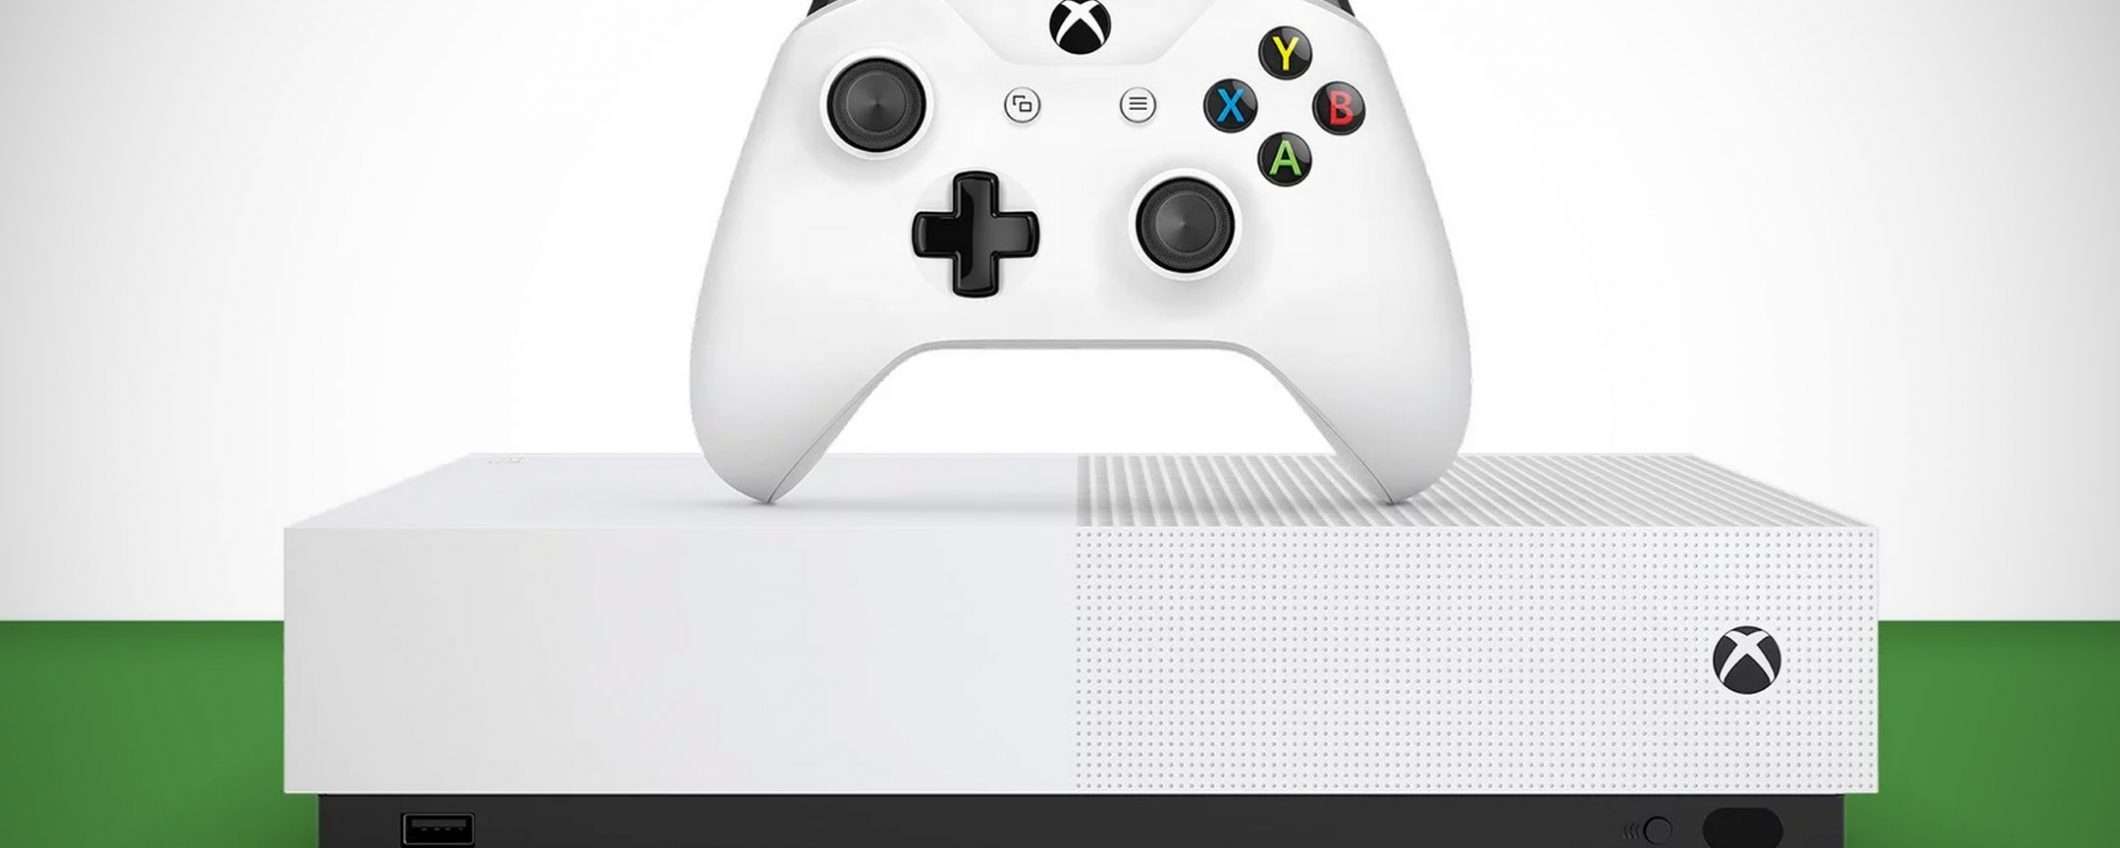 Ecco la nuova Xbox One S All-Digital Edition